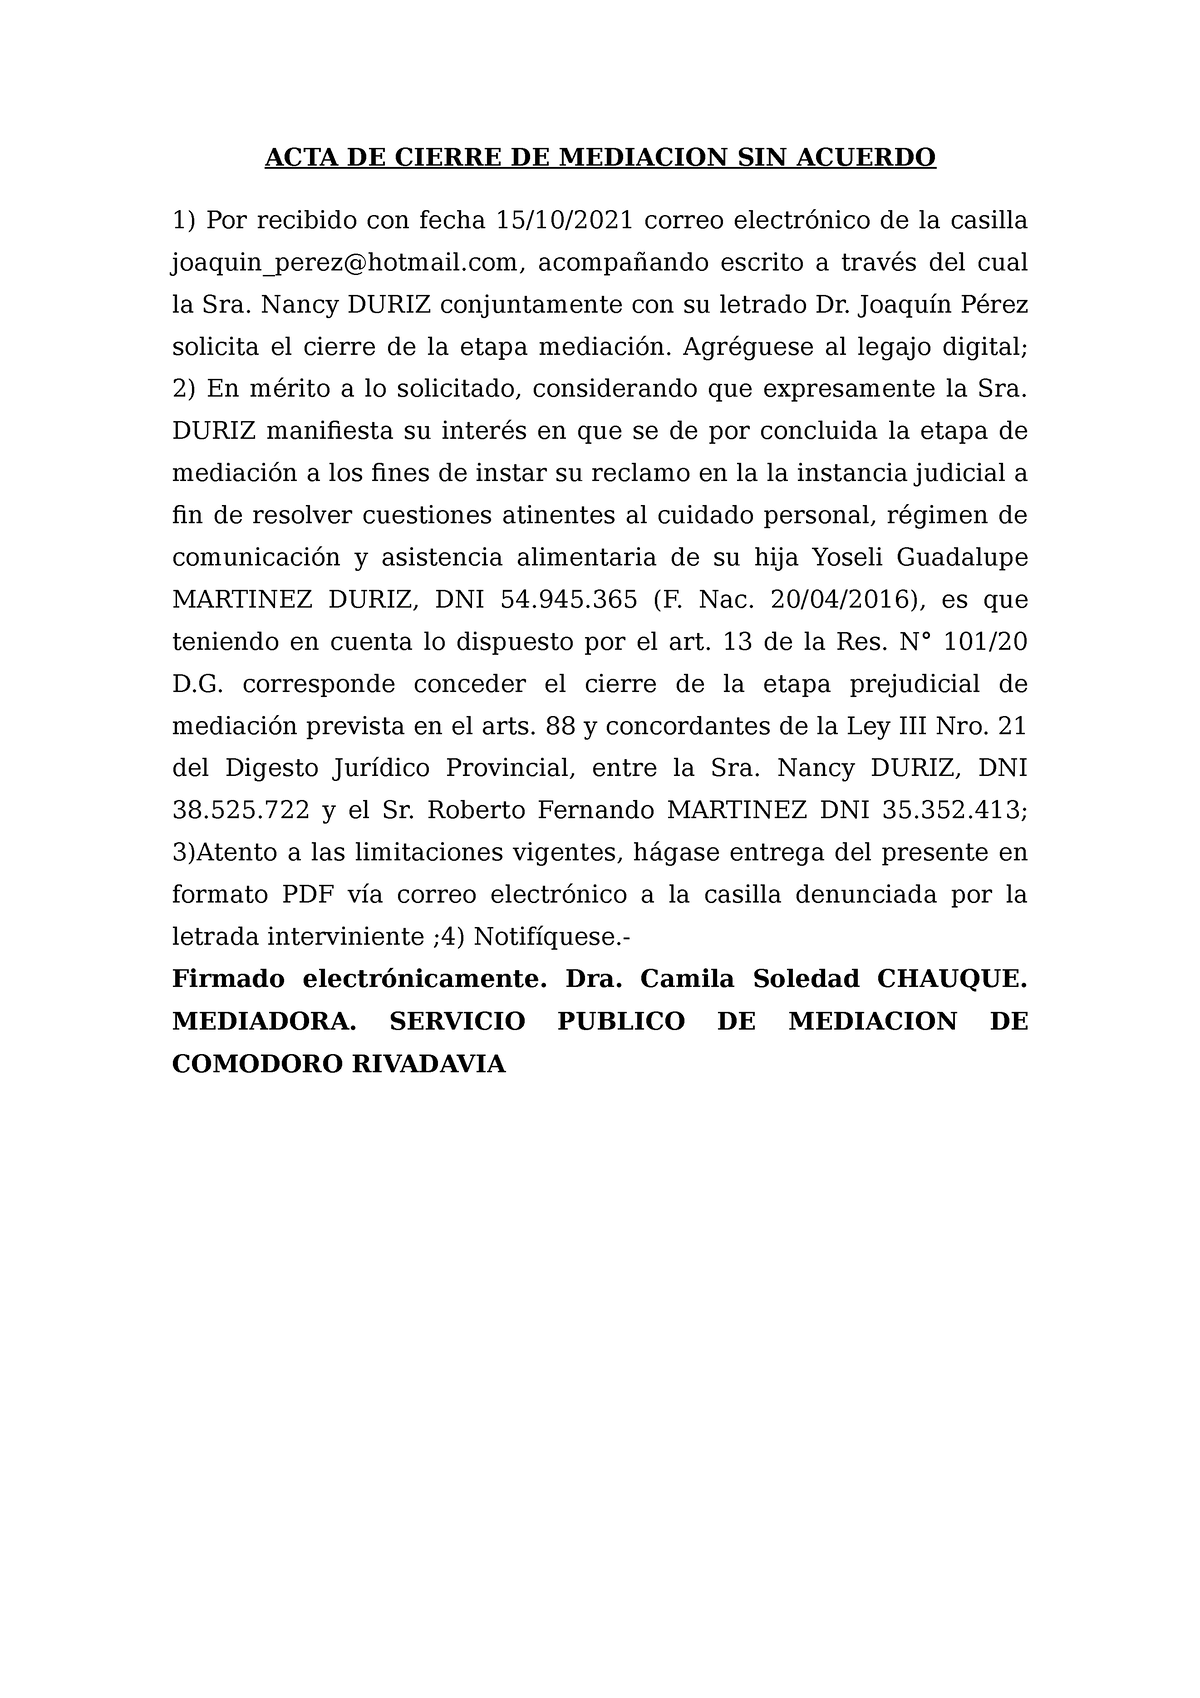 ACTA DE Cierre DE Mediacion SIN Acuerdo - ACTA DE CIERRE DE MEDIACION SIN  ACUERDO Por recibido con - Studocu